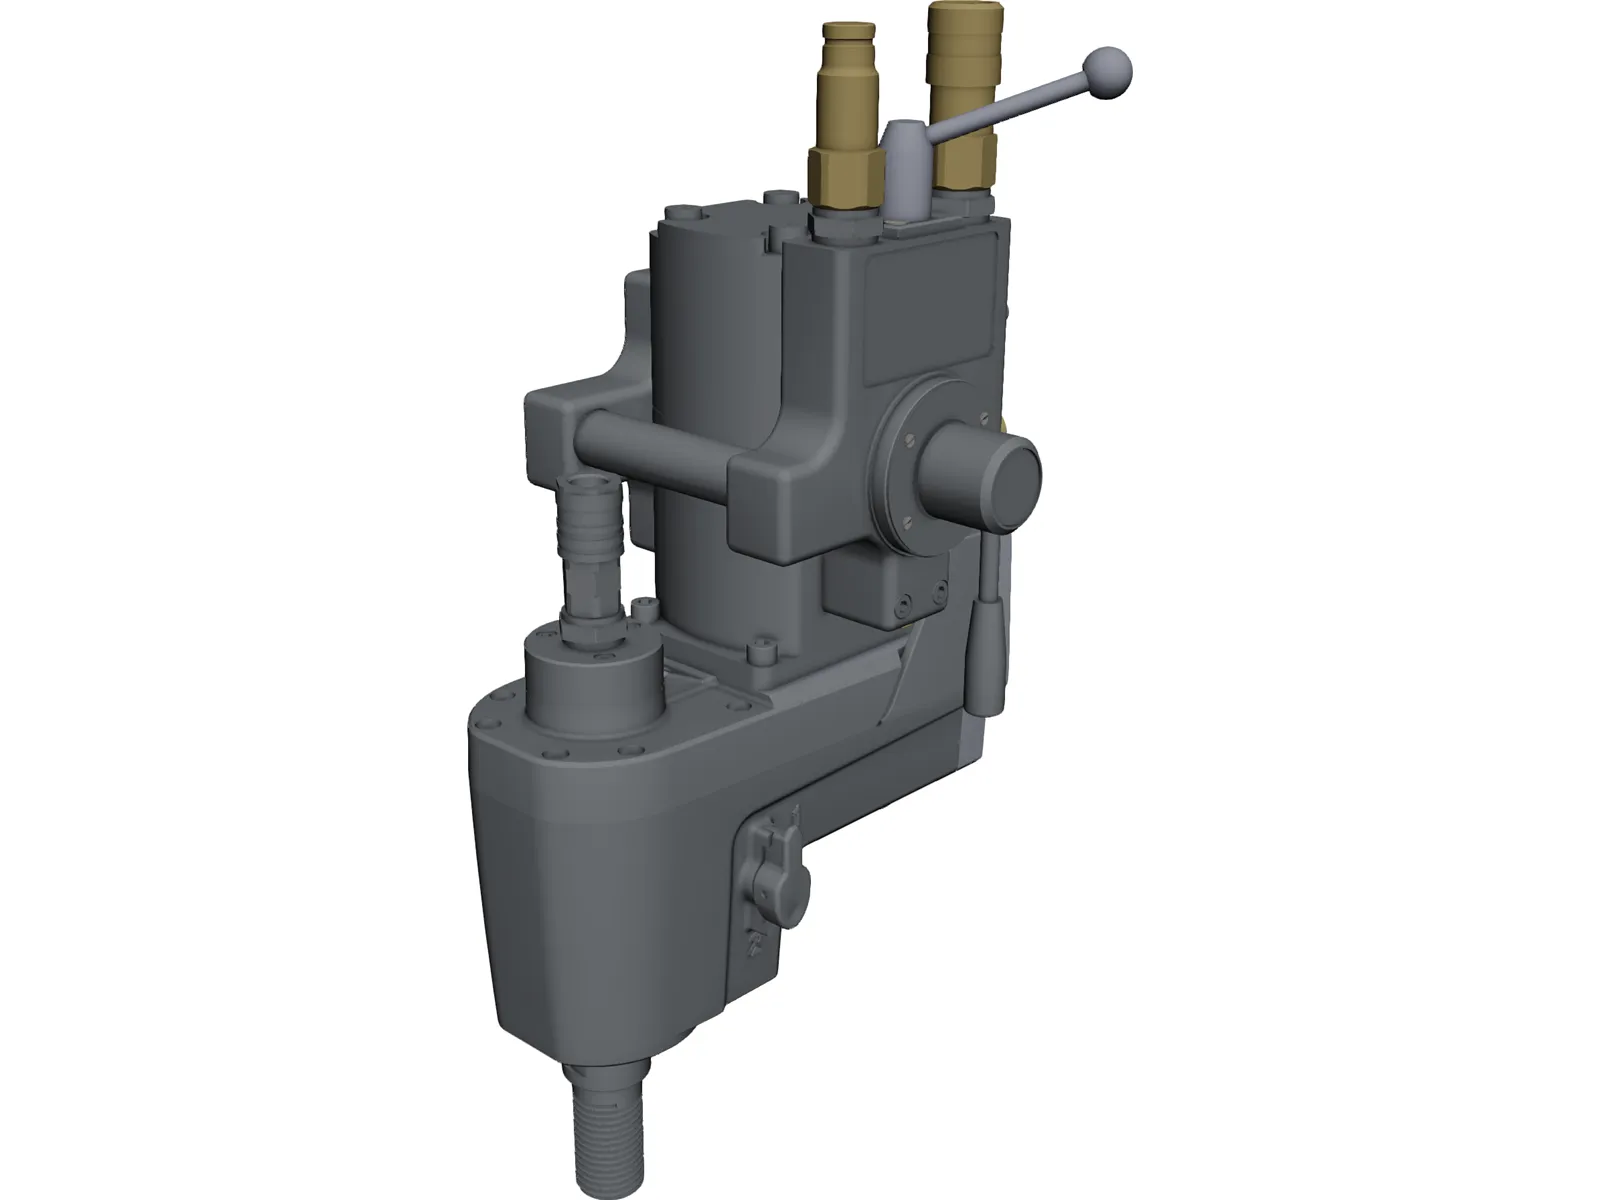 Husqvarna Drillmotor DM406 3D Model